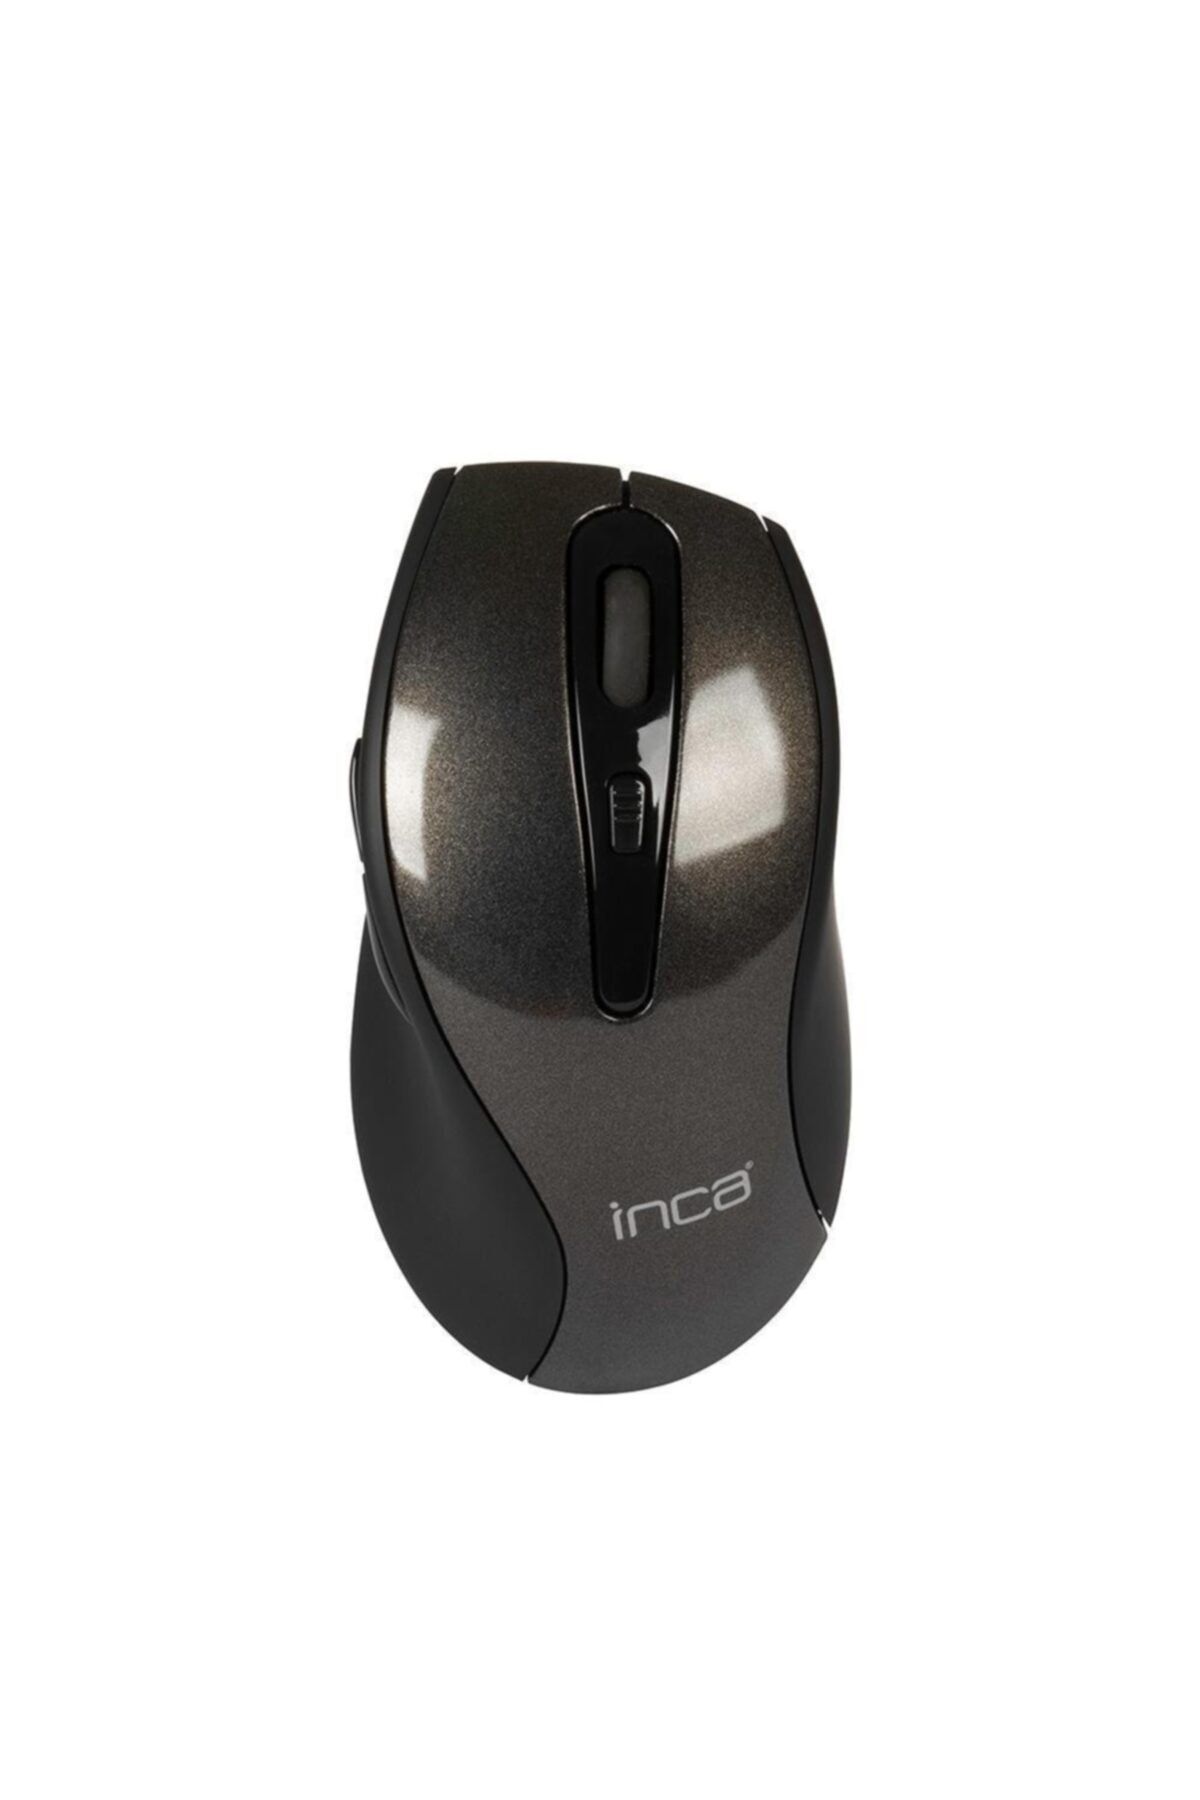 Inca 2.4ghz 1600 Dpi Nano Laser Kablosuz Mouse Iwm-505